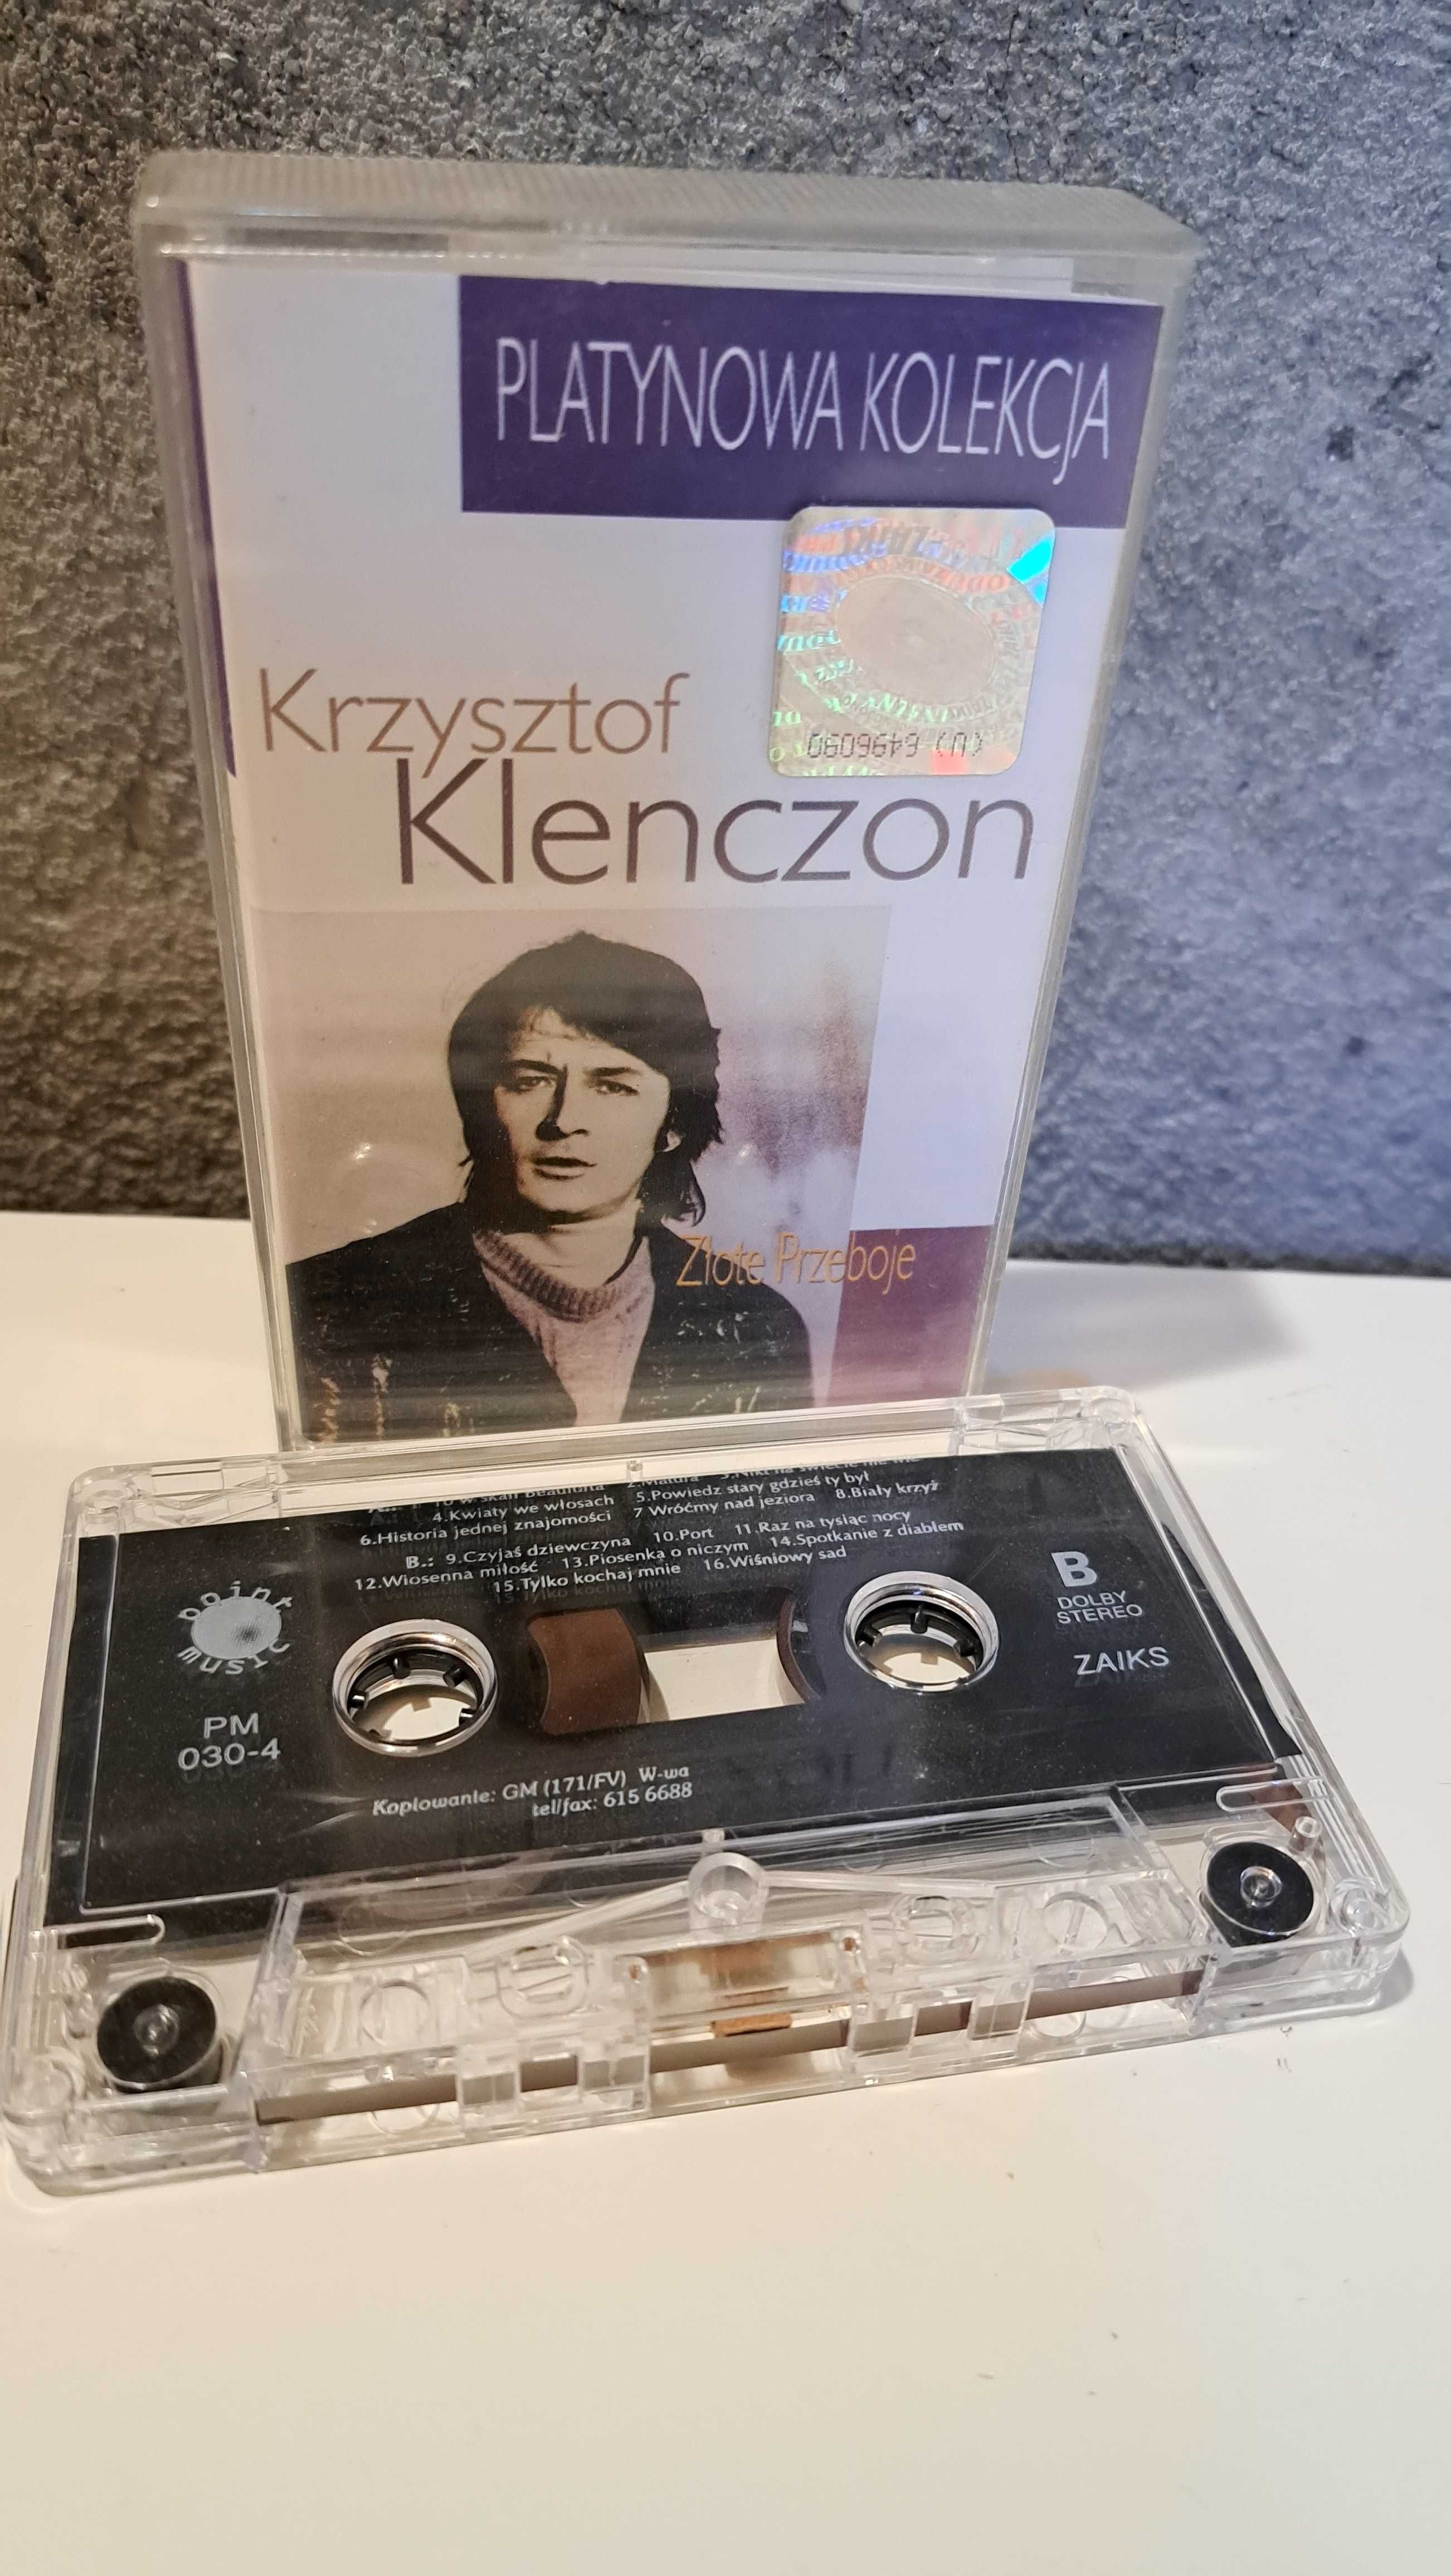 Krzystzof Klenczon platynowa kolekcja kaseta audio